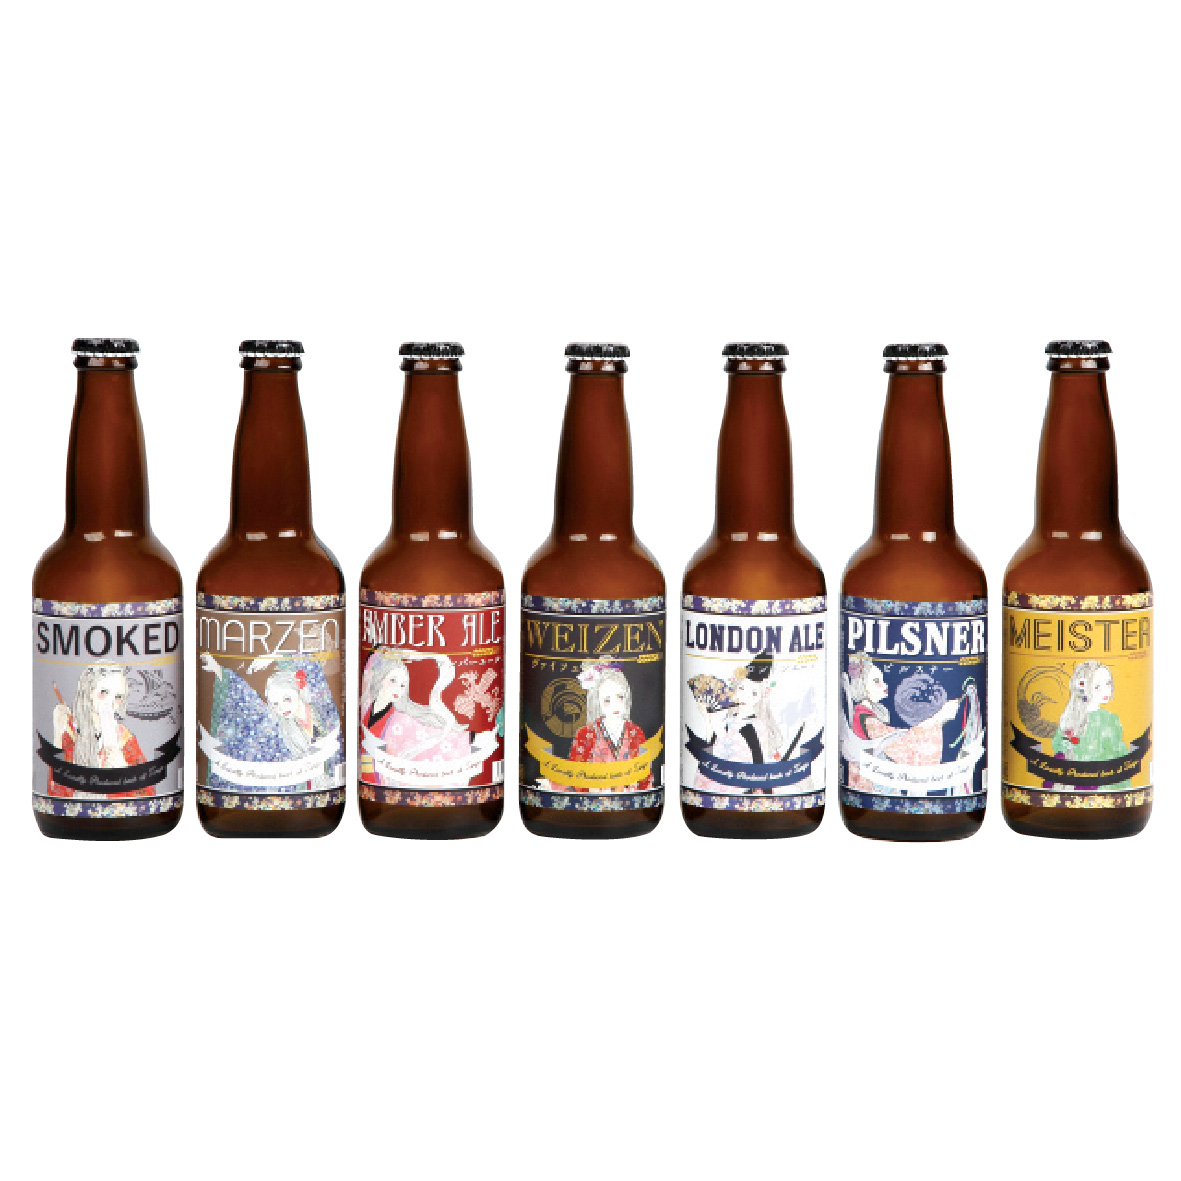 榮獲「2013年國際啤酒比賽金賞」，酒標繪上丹後七姬神話女神，極具收藏優值。「丹後王國」手工啤酒系列 (330ml)特價 $44/瓶